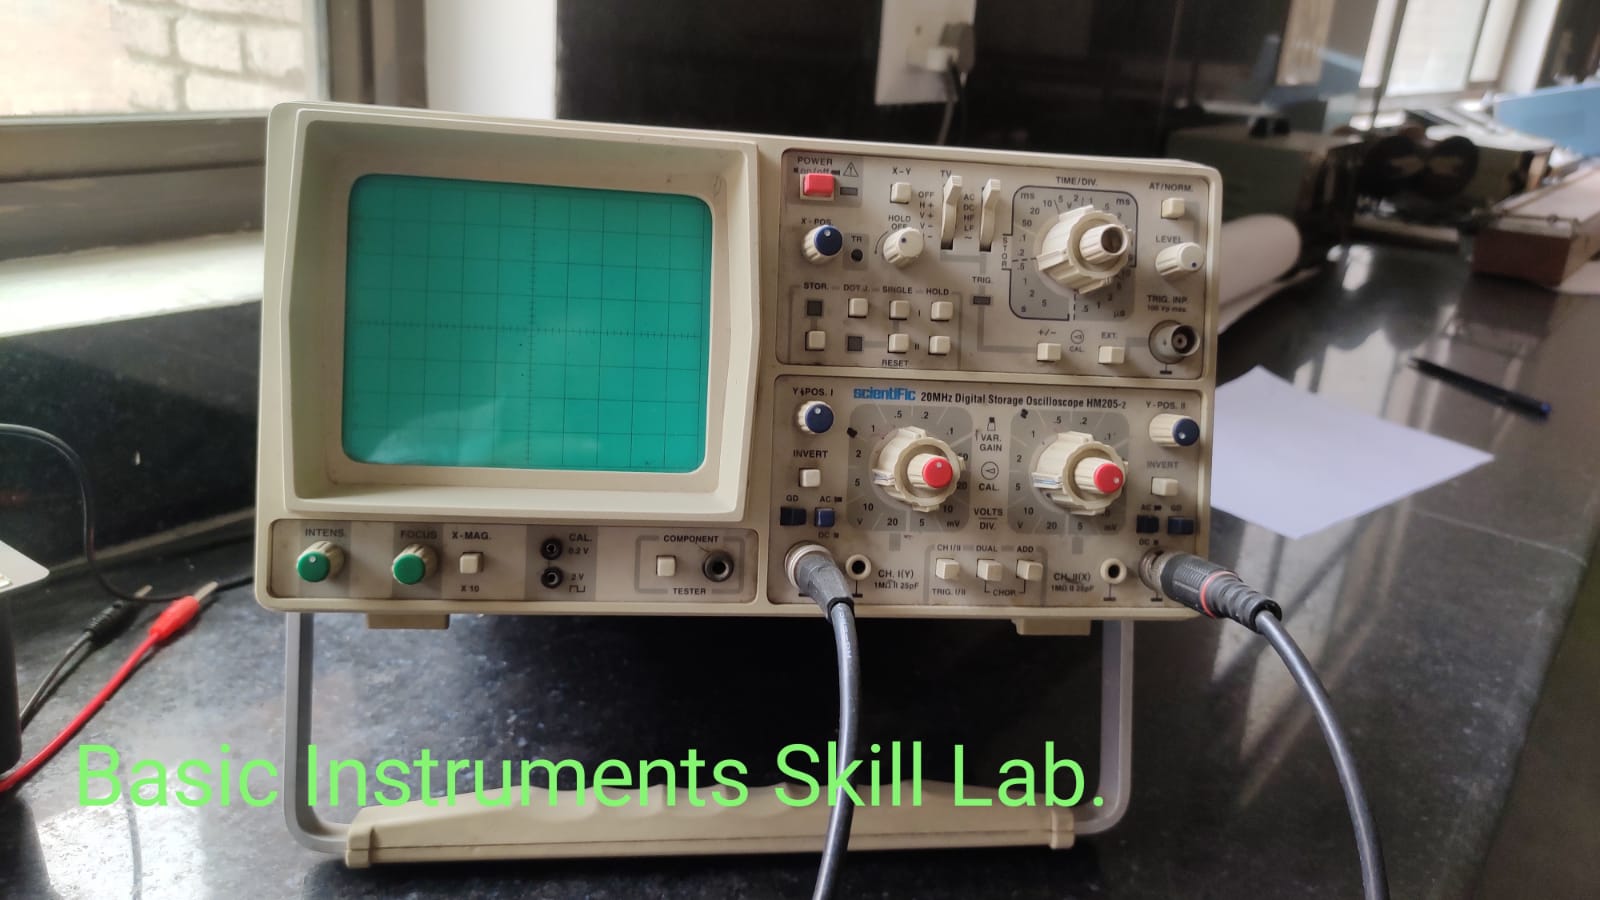 Basic Instruments Skill Lab.